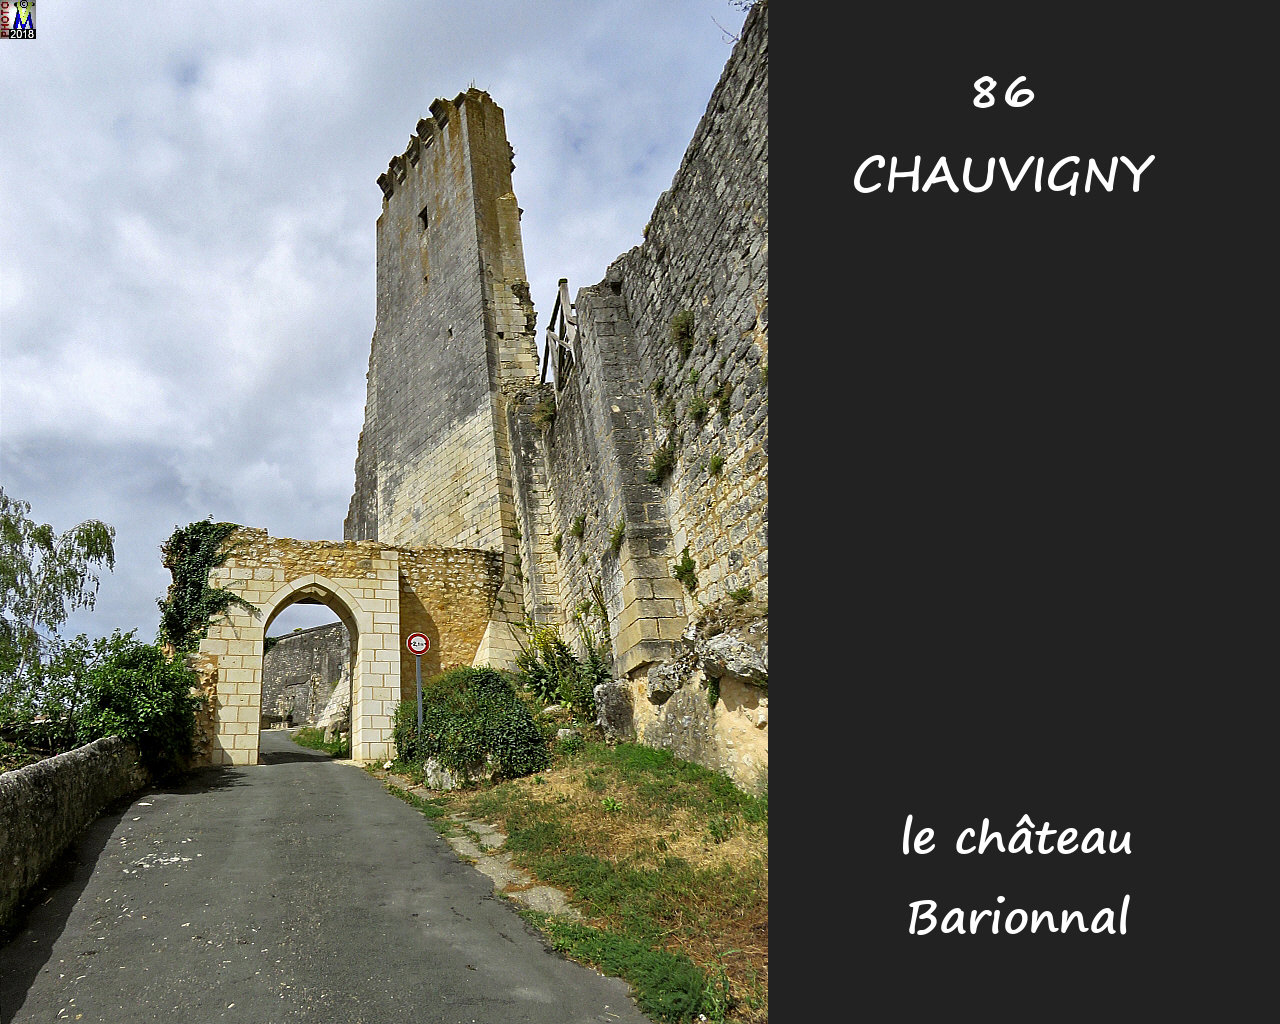 86CHAUVIGNY_chateau-Barionnal_1010.jpg